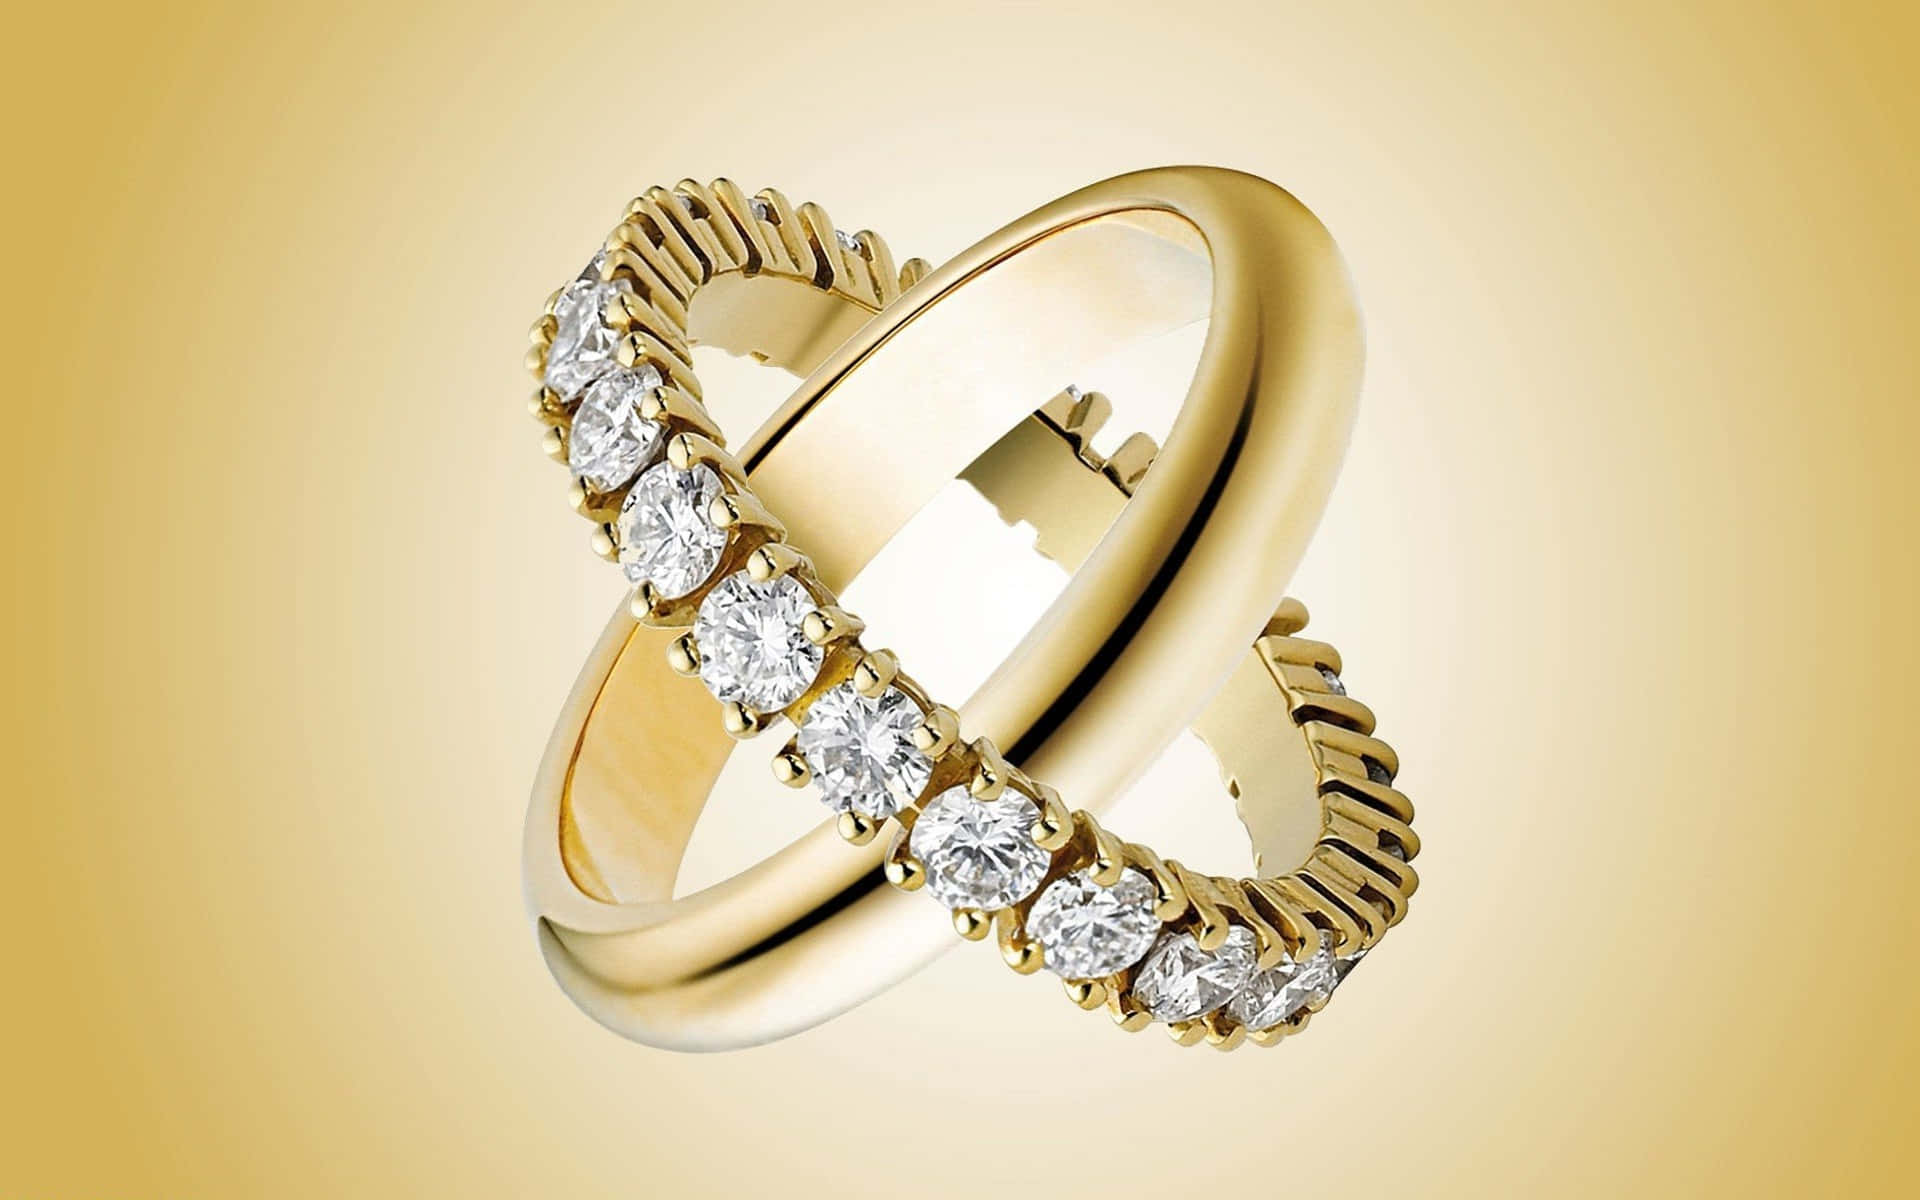 Immaginedi Un Anello Di Matrimonio In Oro E Diamanti In 3d